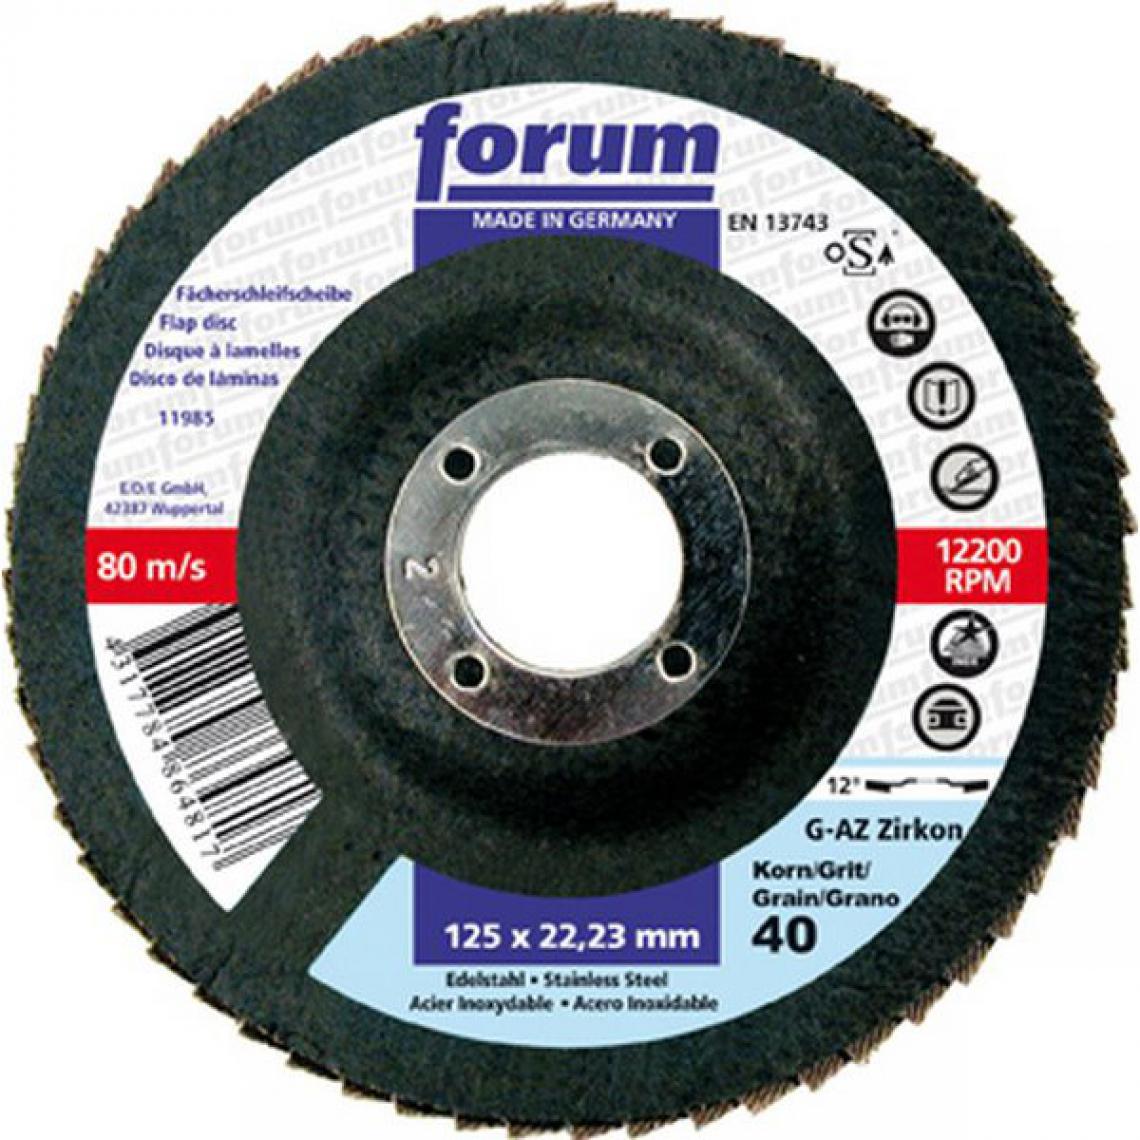 Forum - Meule-éventail Ø 115 mm (13300 tr/mn), 12° bombée, Grain : 80 - Accessoires meulage